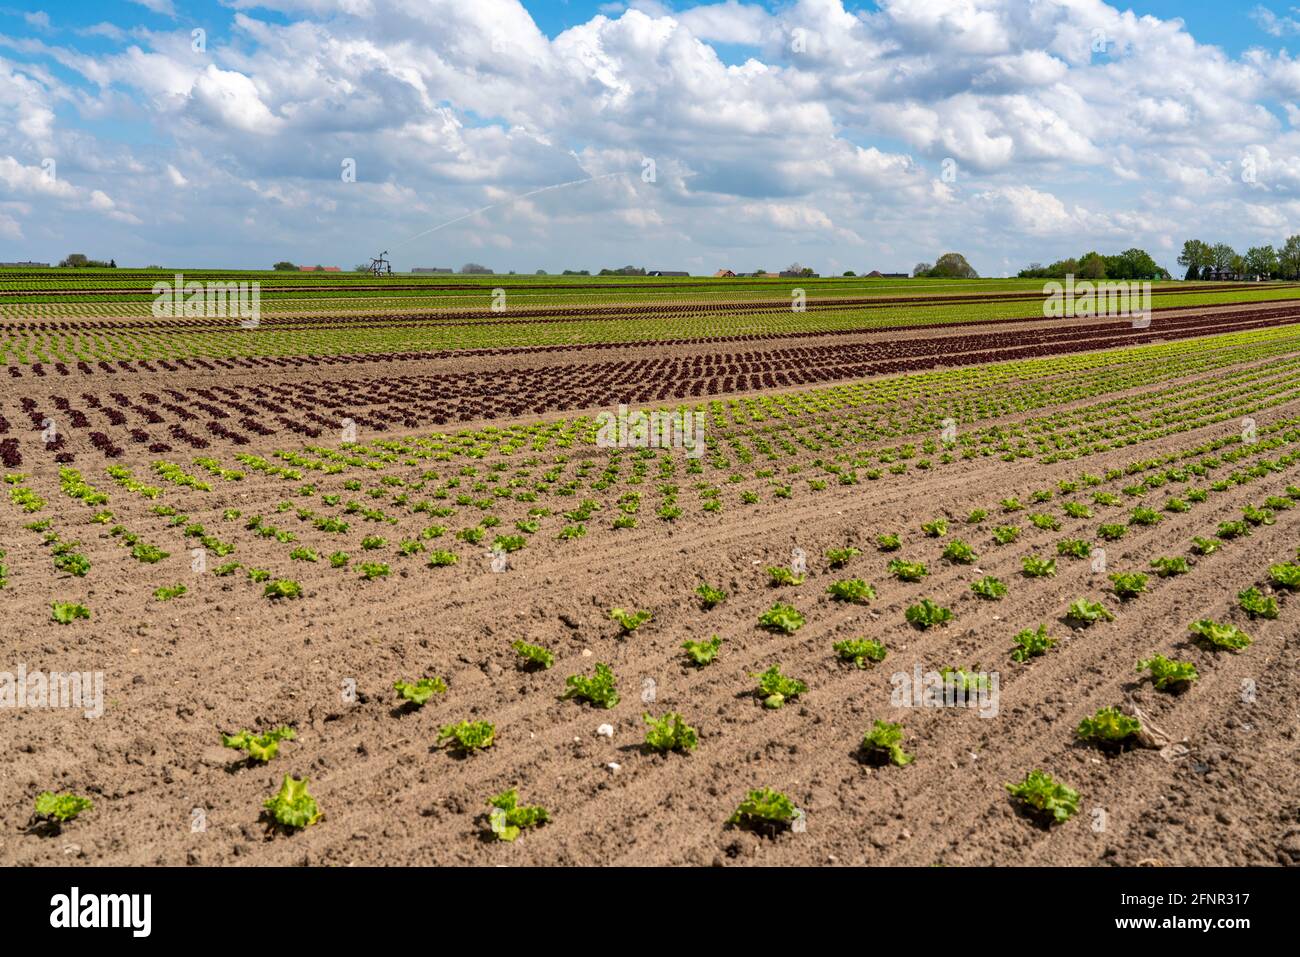 Agriculture, laitue poussant dans un champ, Lollo Bionda et Lollo Rossa, dans de longues rangées de plantes, dans différents stades de croissance, NRW, Allemagne Banque D'Images